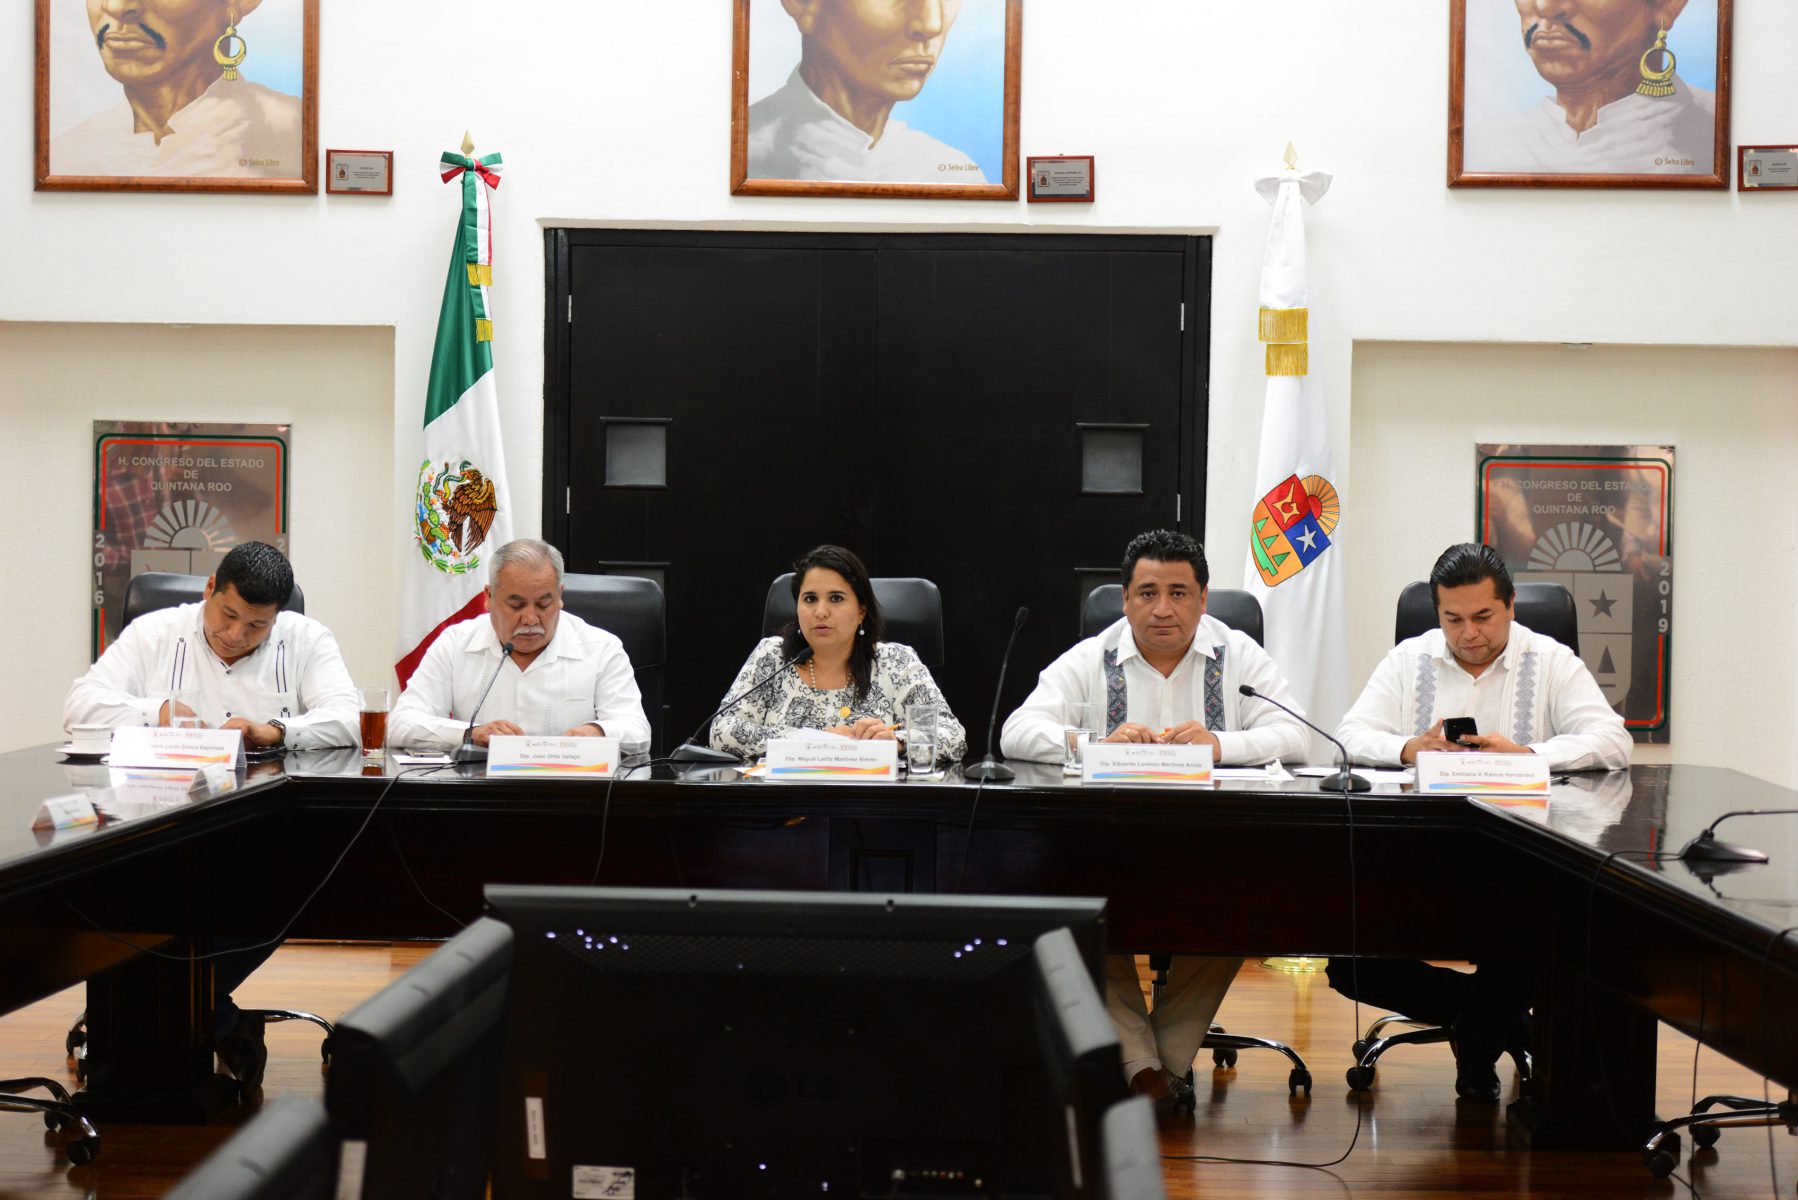 La Comisión Anticorrupción, encabezada por la diputada Mayuli Martínez Simón sesionó para definir la terna de donde se elegirá a quienes ocupen los Órganos Internos de Control.